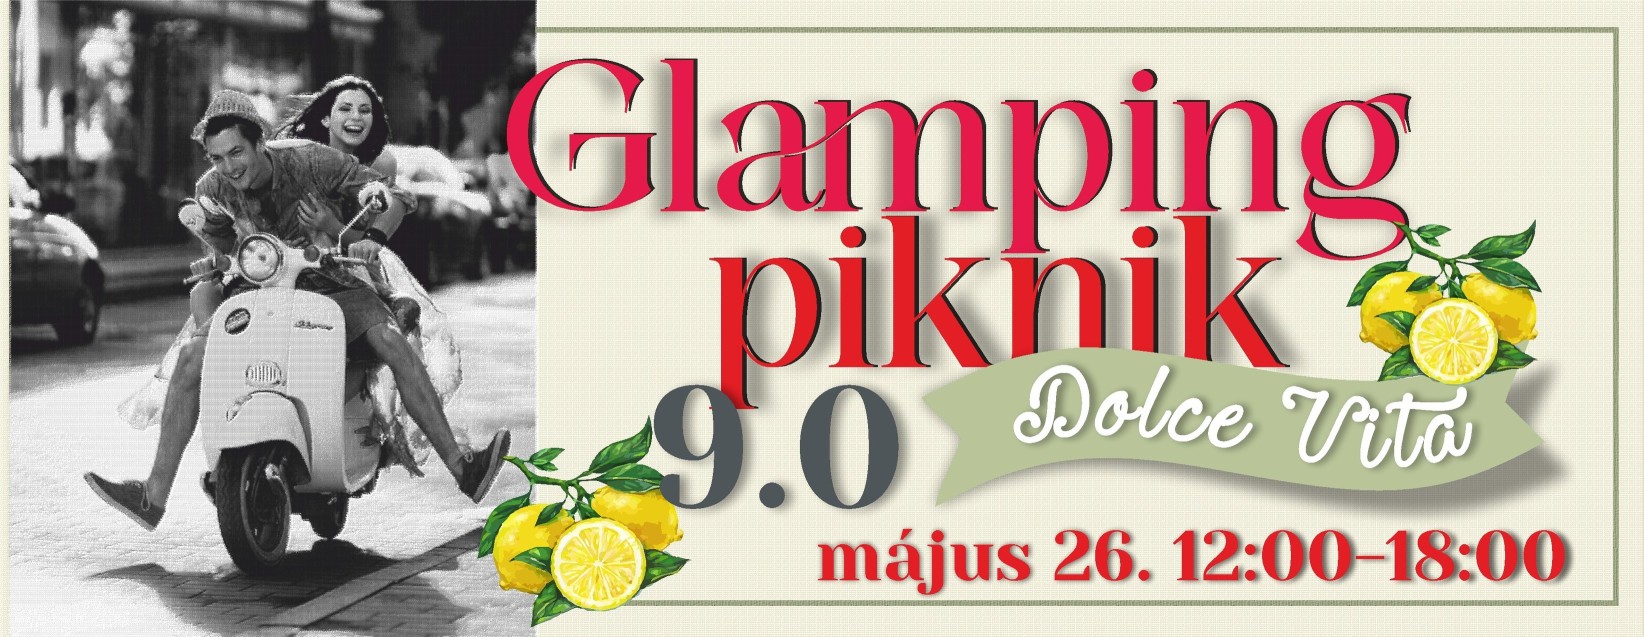 Glamping Piknik 9.0